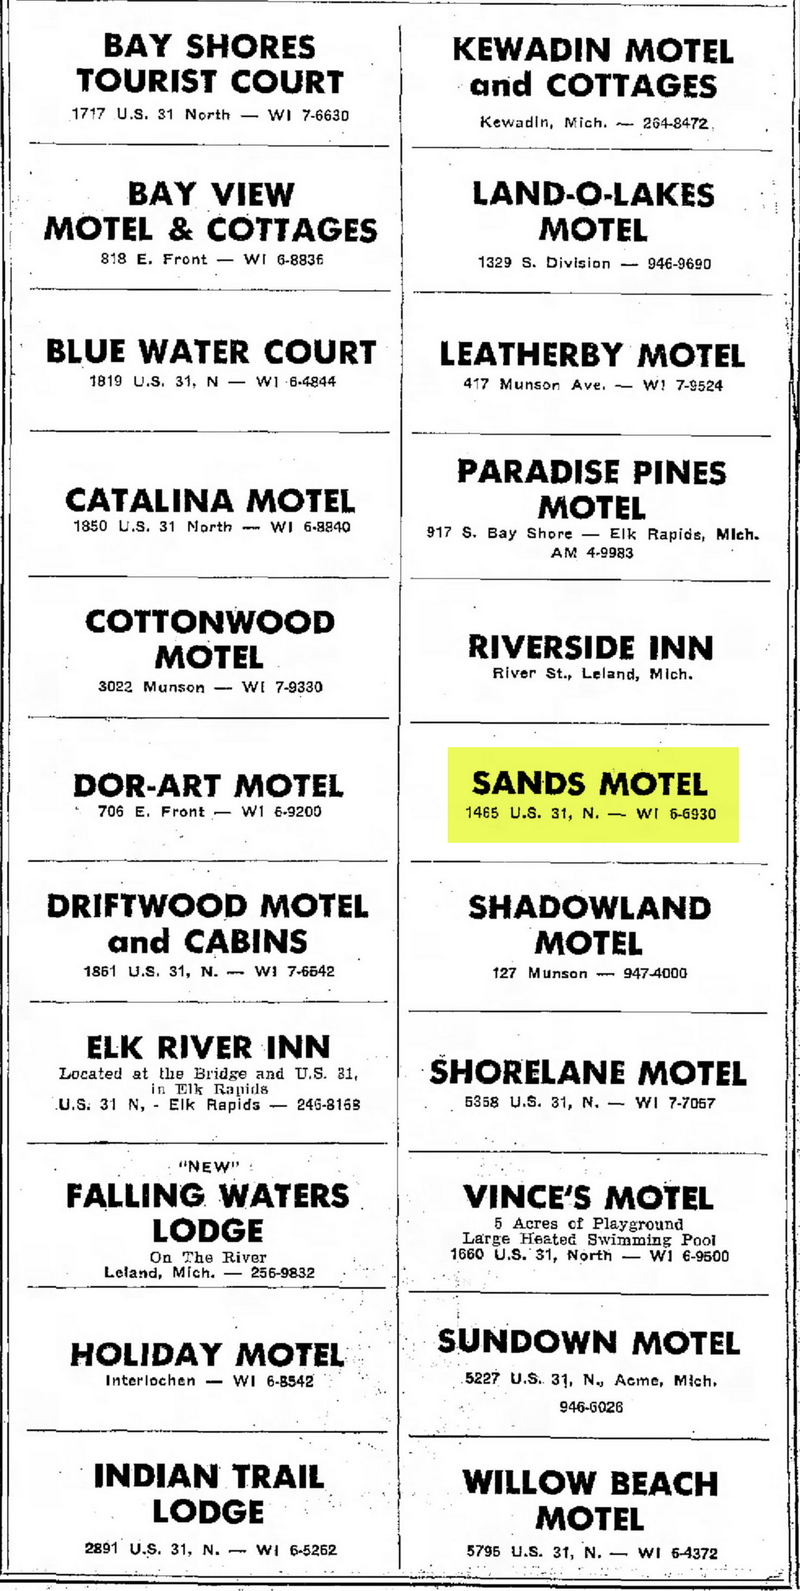 Brio Beach Inn (Sands Motel) - Jul 13 1966 Ad